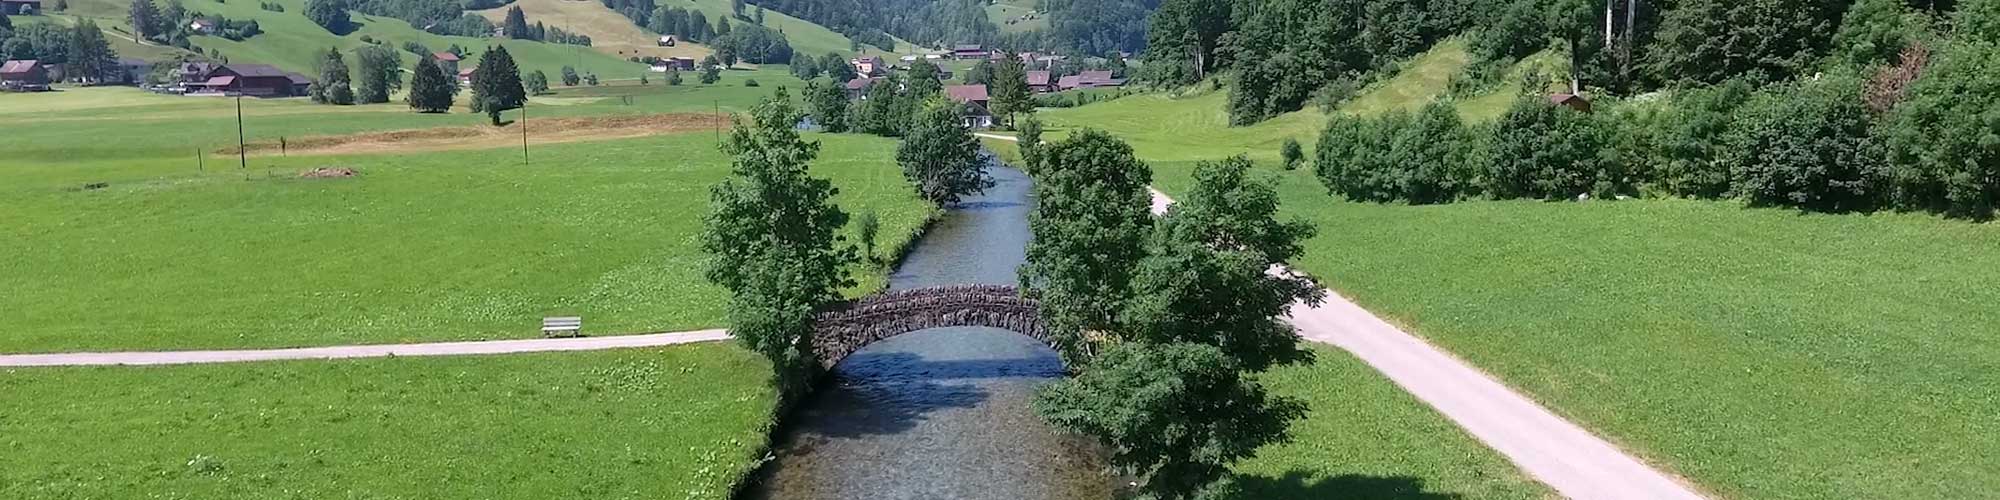 Flusslauf mit einer Steinbogenbrücke